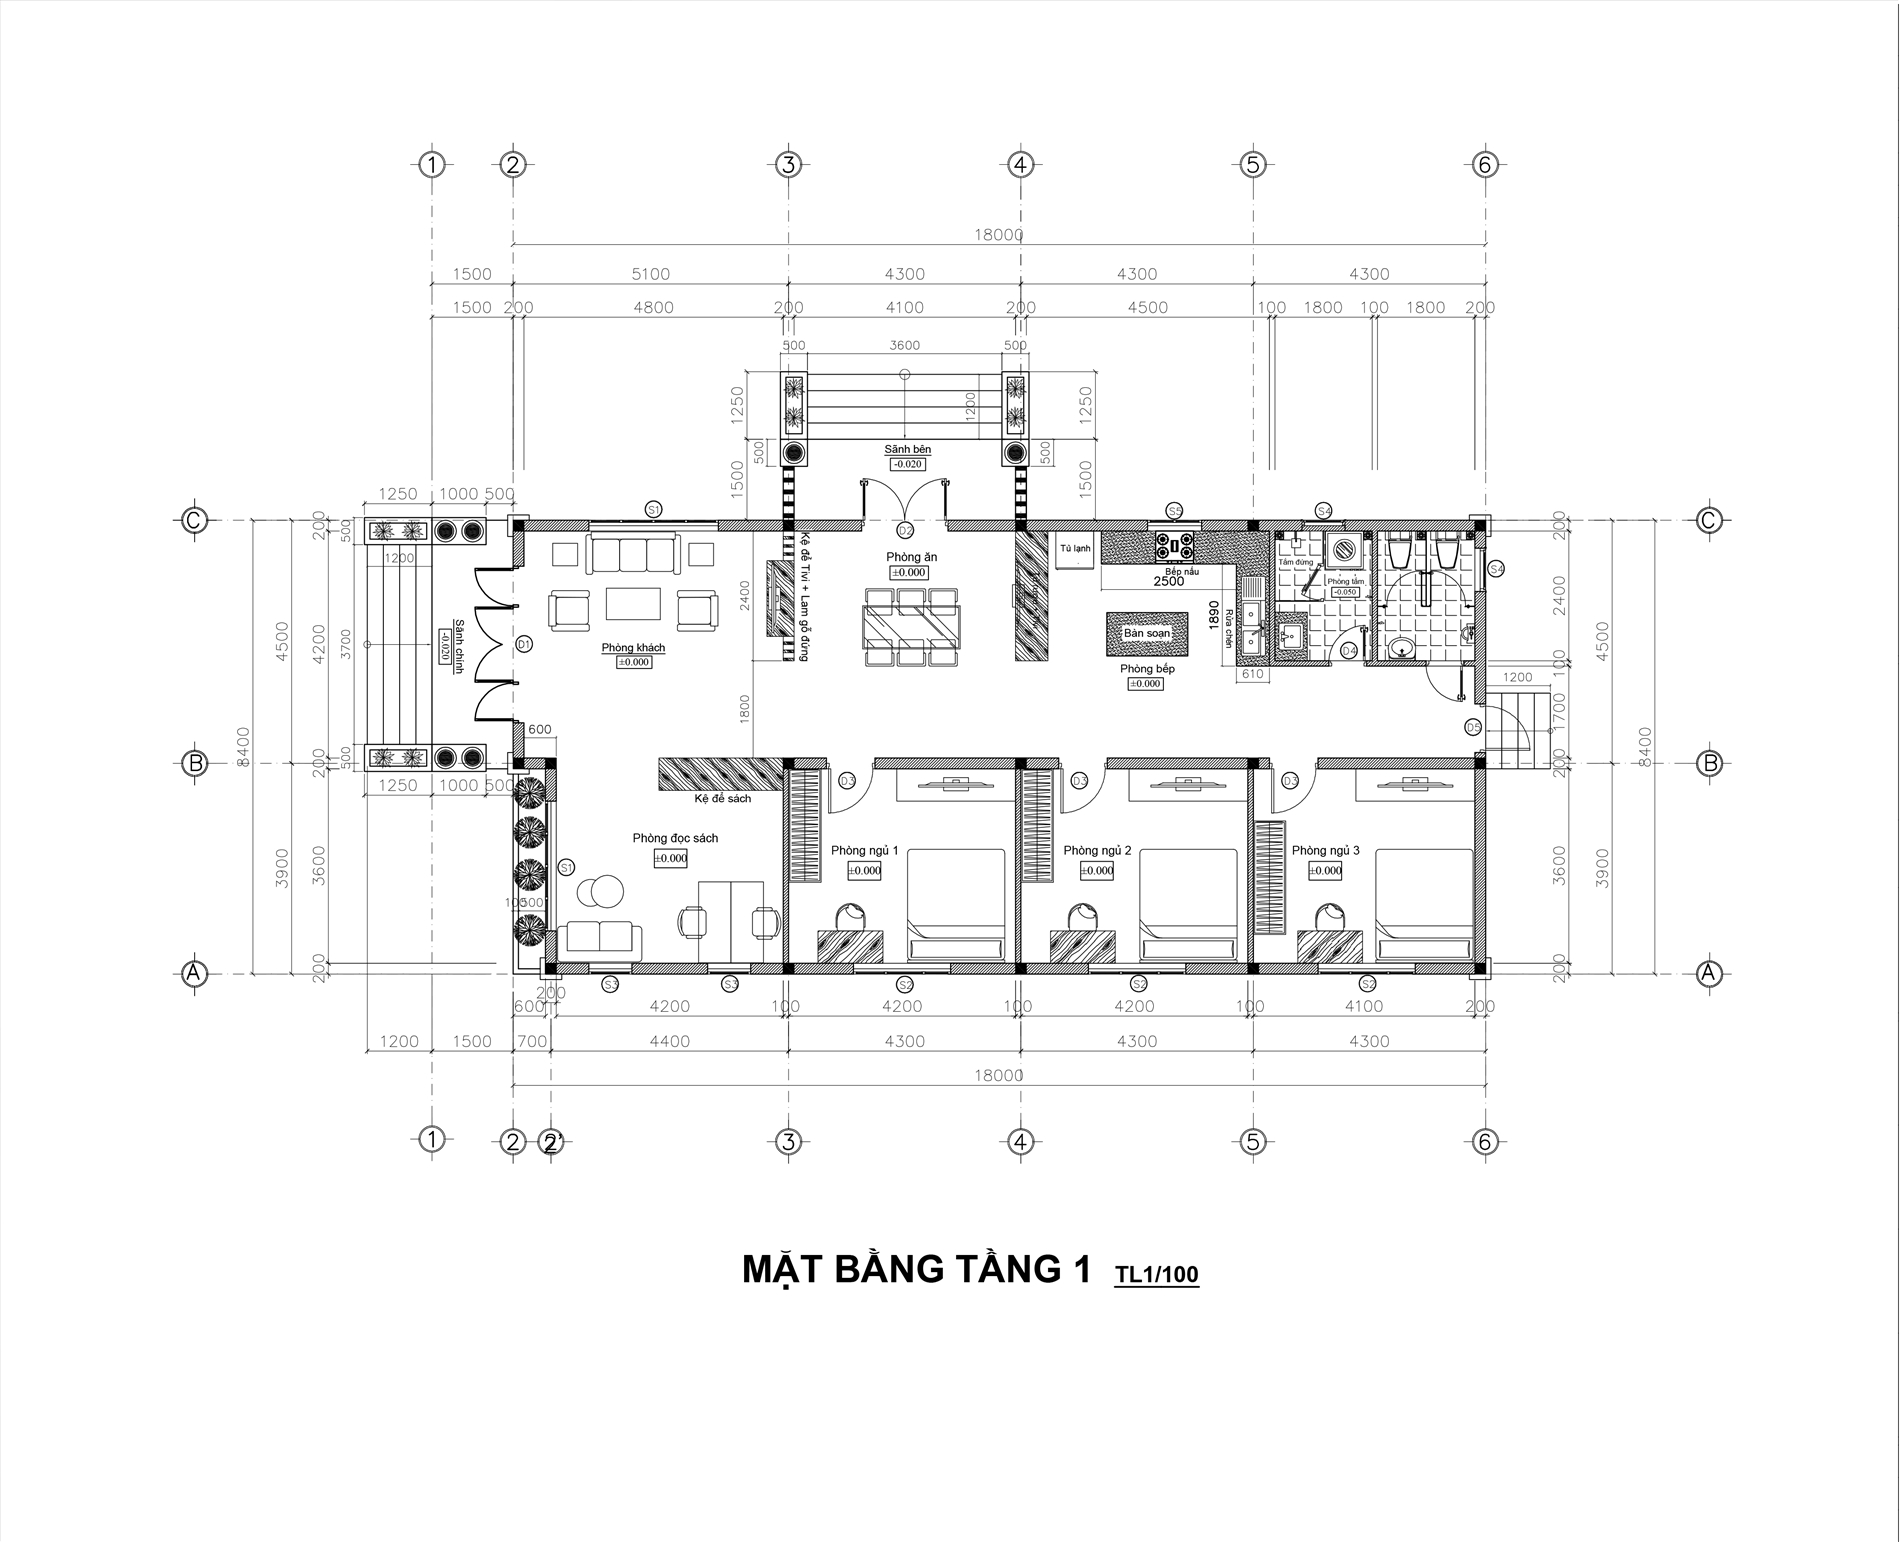 Mẫu thiết kế biệt thự nhà vườn 1 tầng 4 phòng ngủ 2023